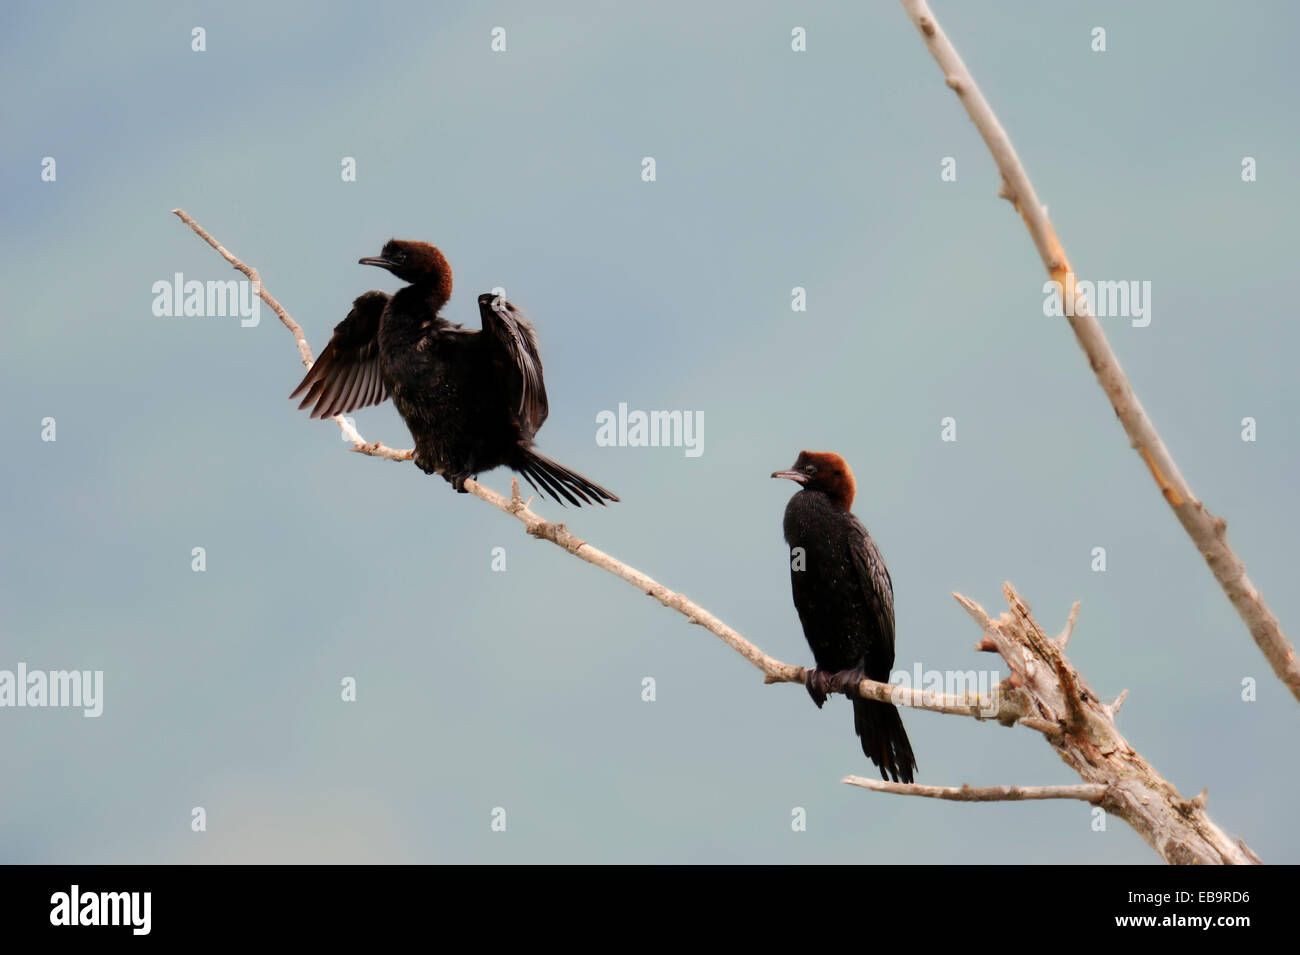 Les cormorans (Phalacrocorax pygmaeus) perché sur branche, Macédoine Centrale, Grèce Banque D'Images